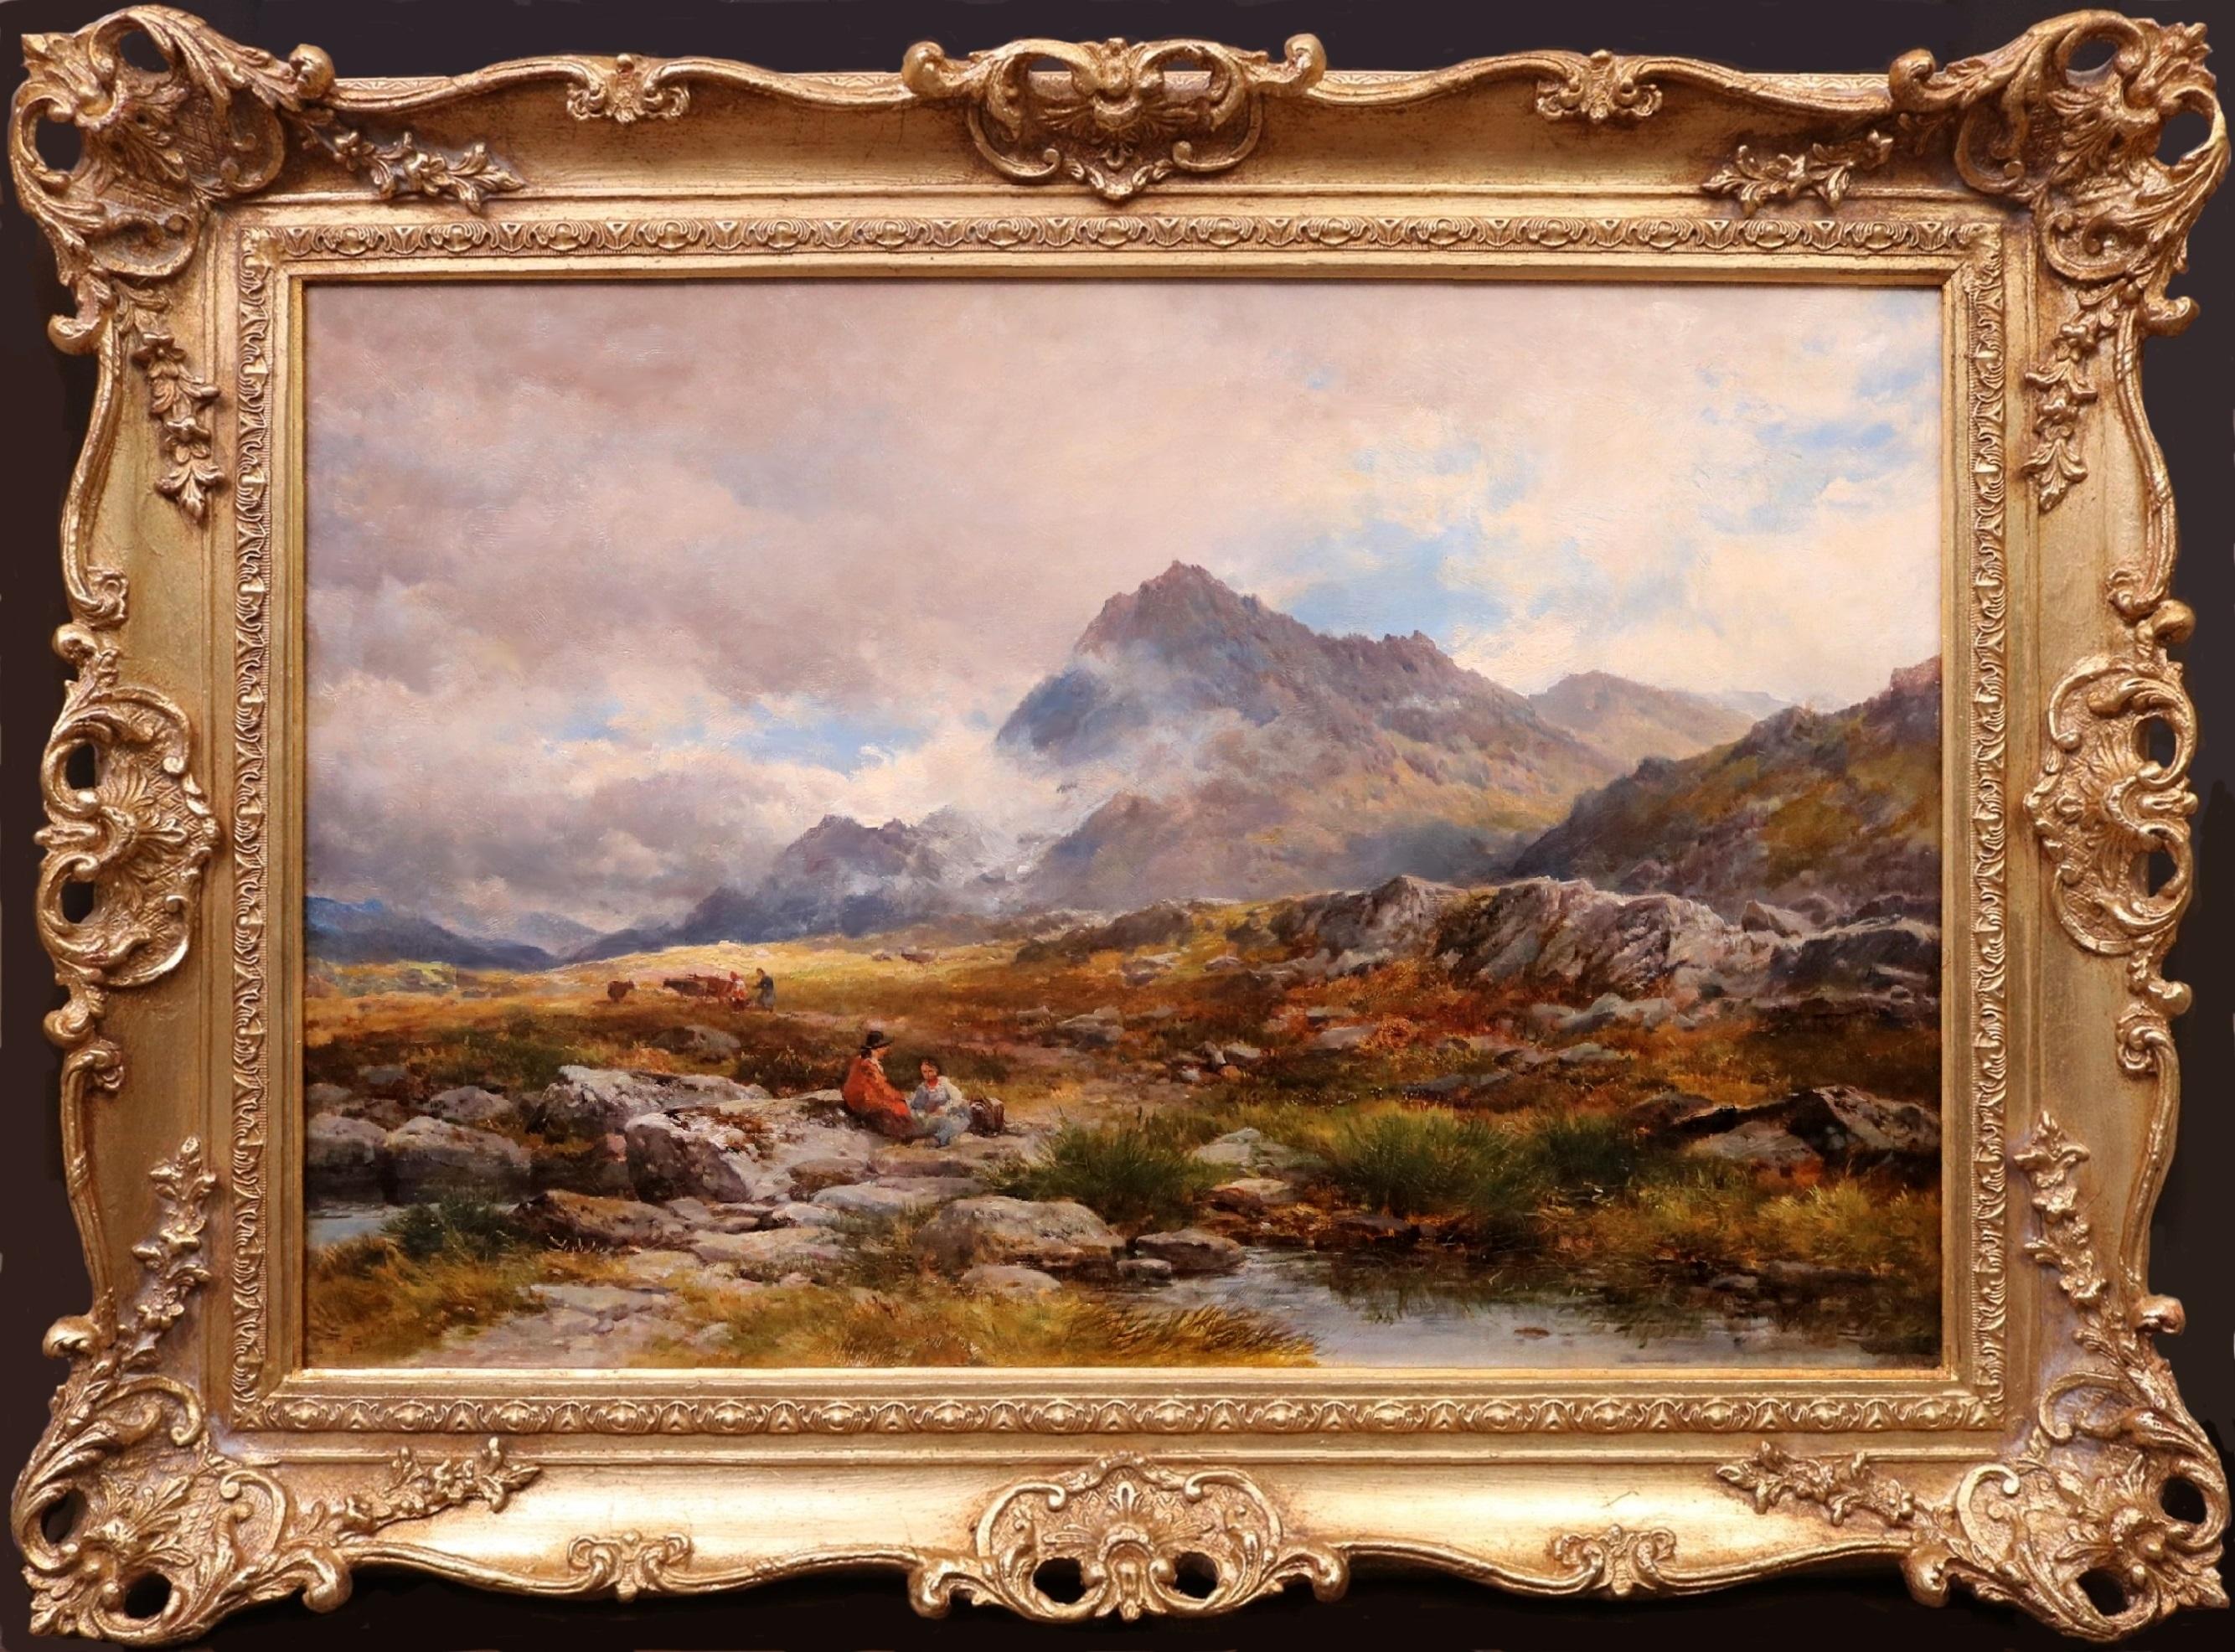 Avant Glyder Fawr - Grande peinture à l'huile de paysage de montagne galloise du 19e siècle  - Painting de John Syer